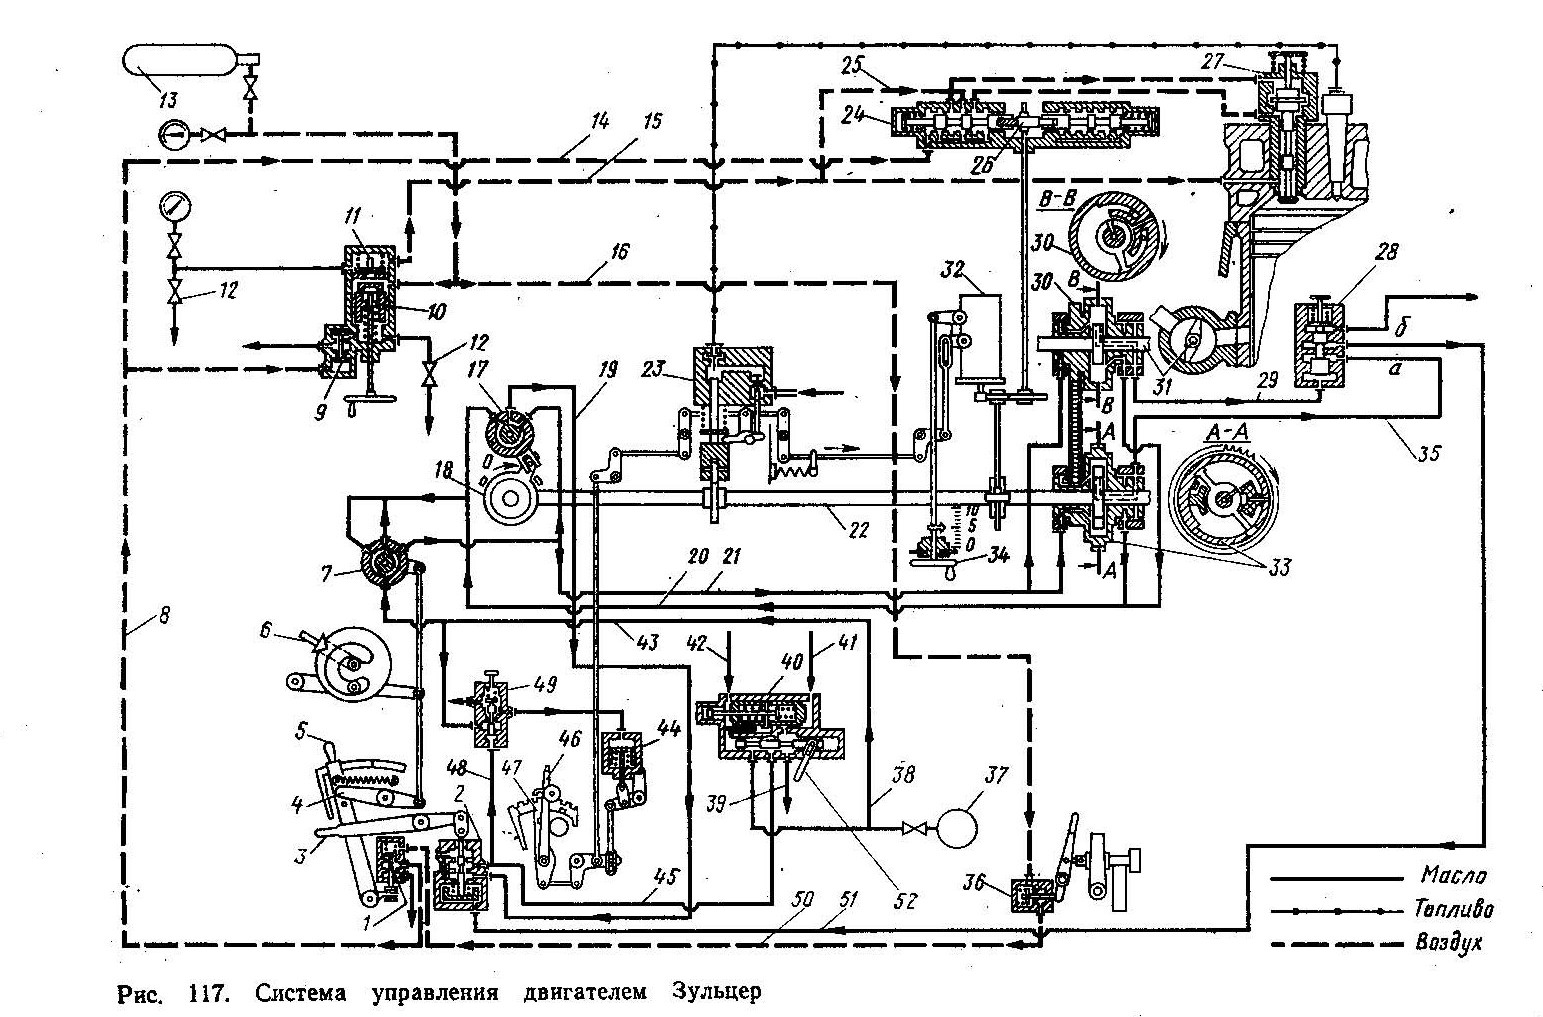 Методическое пособие для практического занятия на тему Система пуска и реверса двигателей «Зульцер»